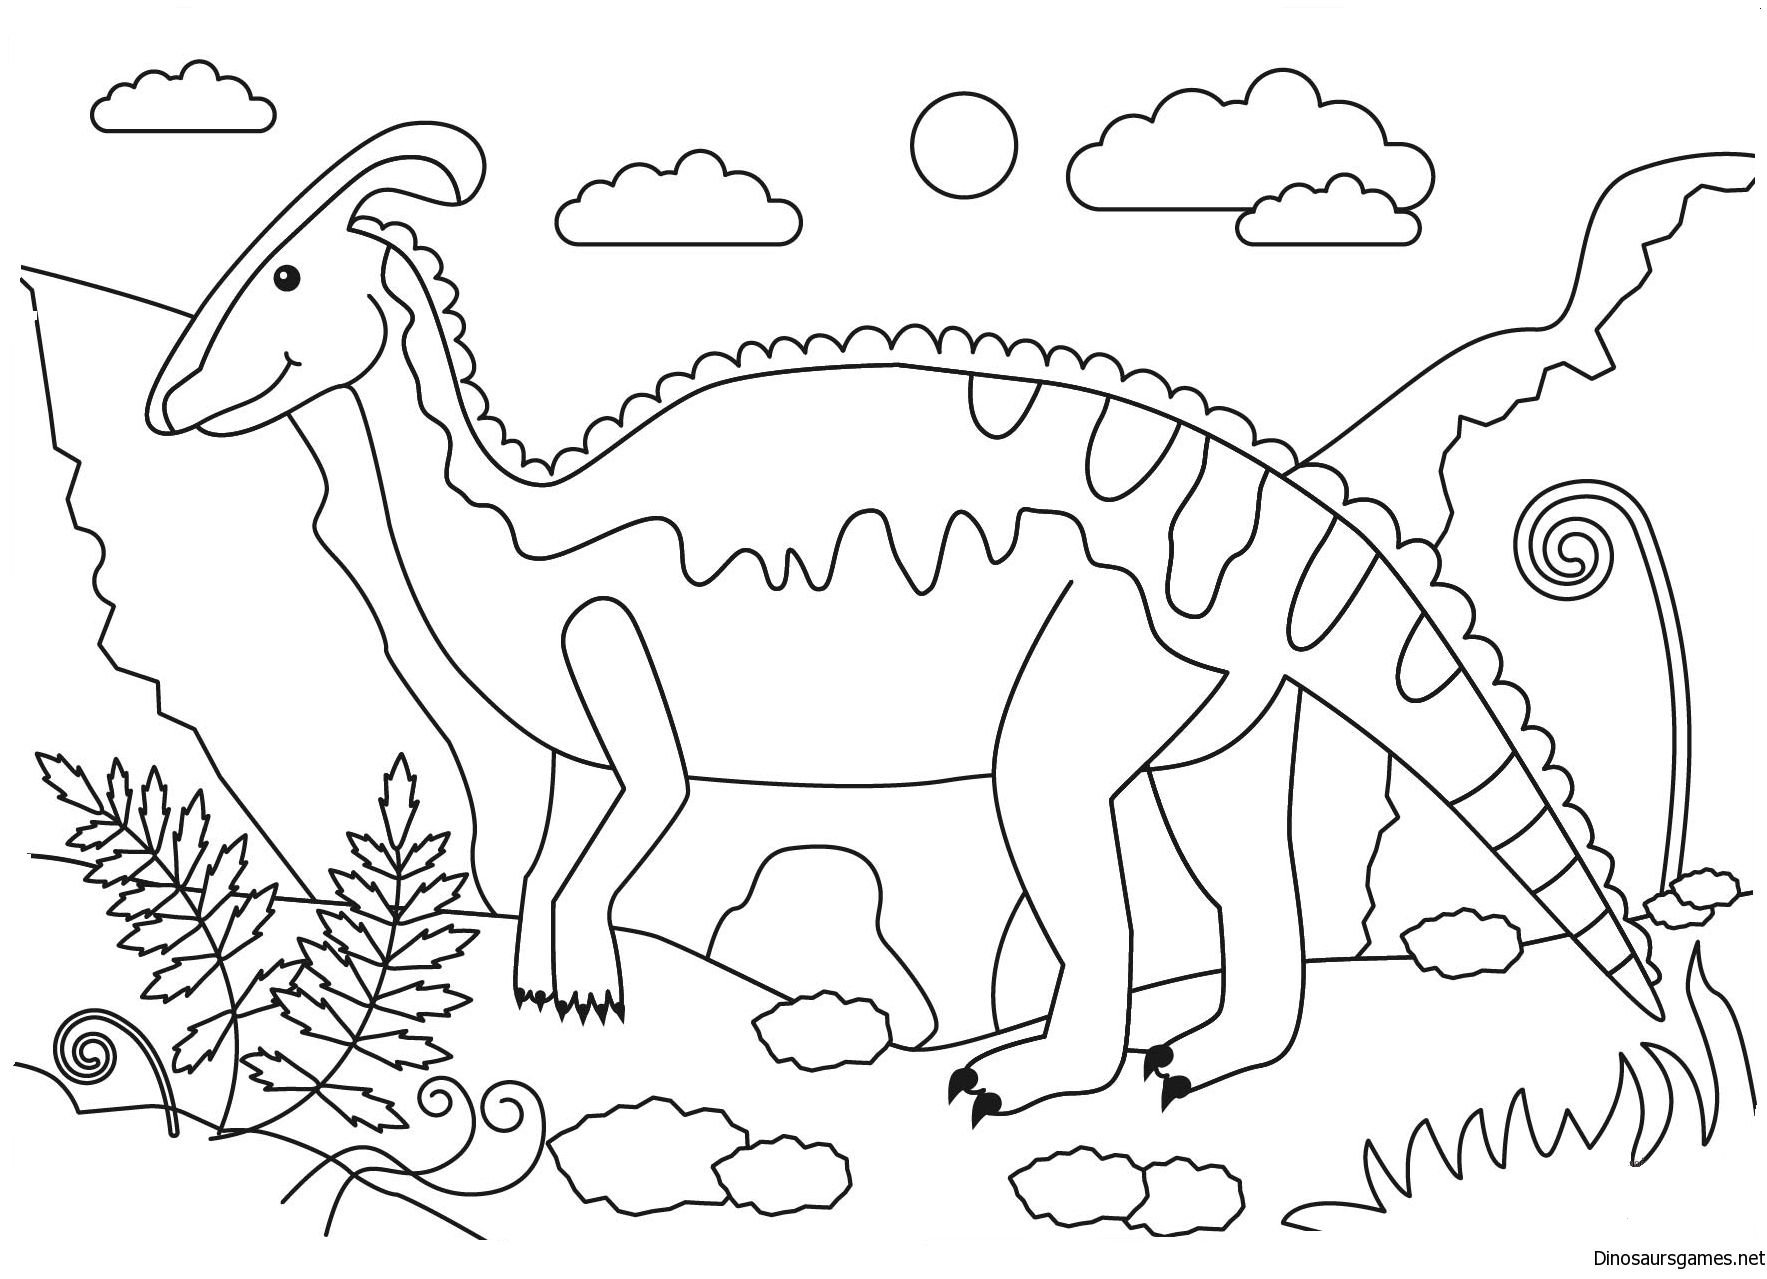 Про динозавров детям 3 года. Динозавры / раскраска. Динозавр раскраска для детей. Динозаврики раскраска для детей. Динозавры для раскрашивания детям.